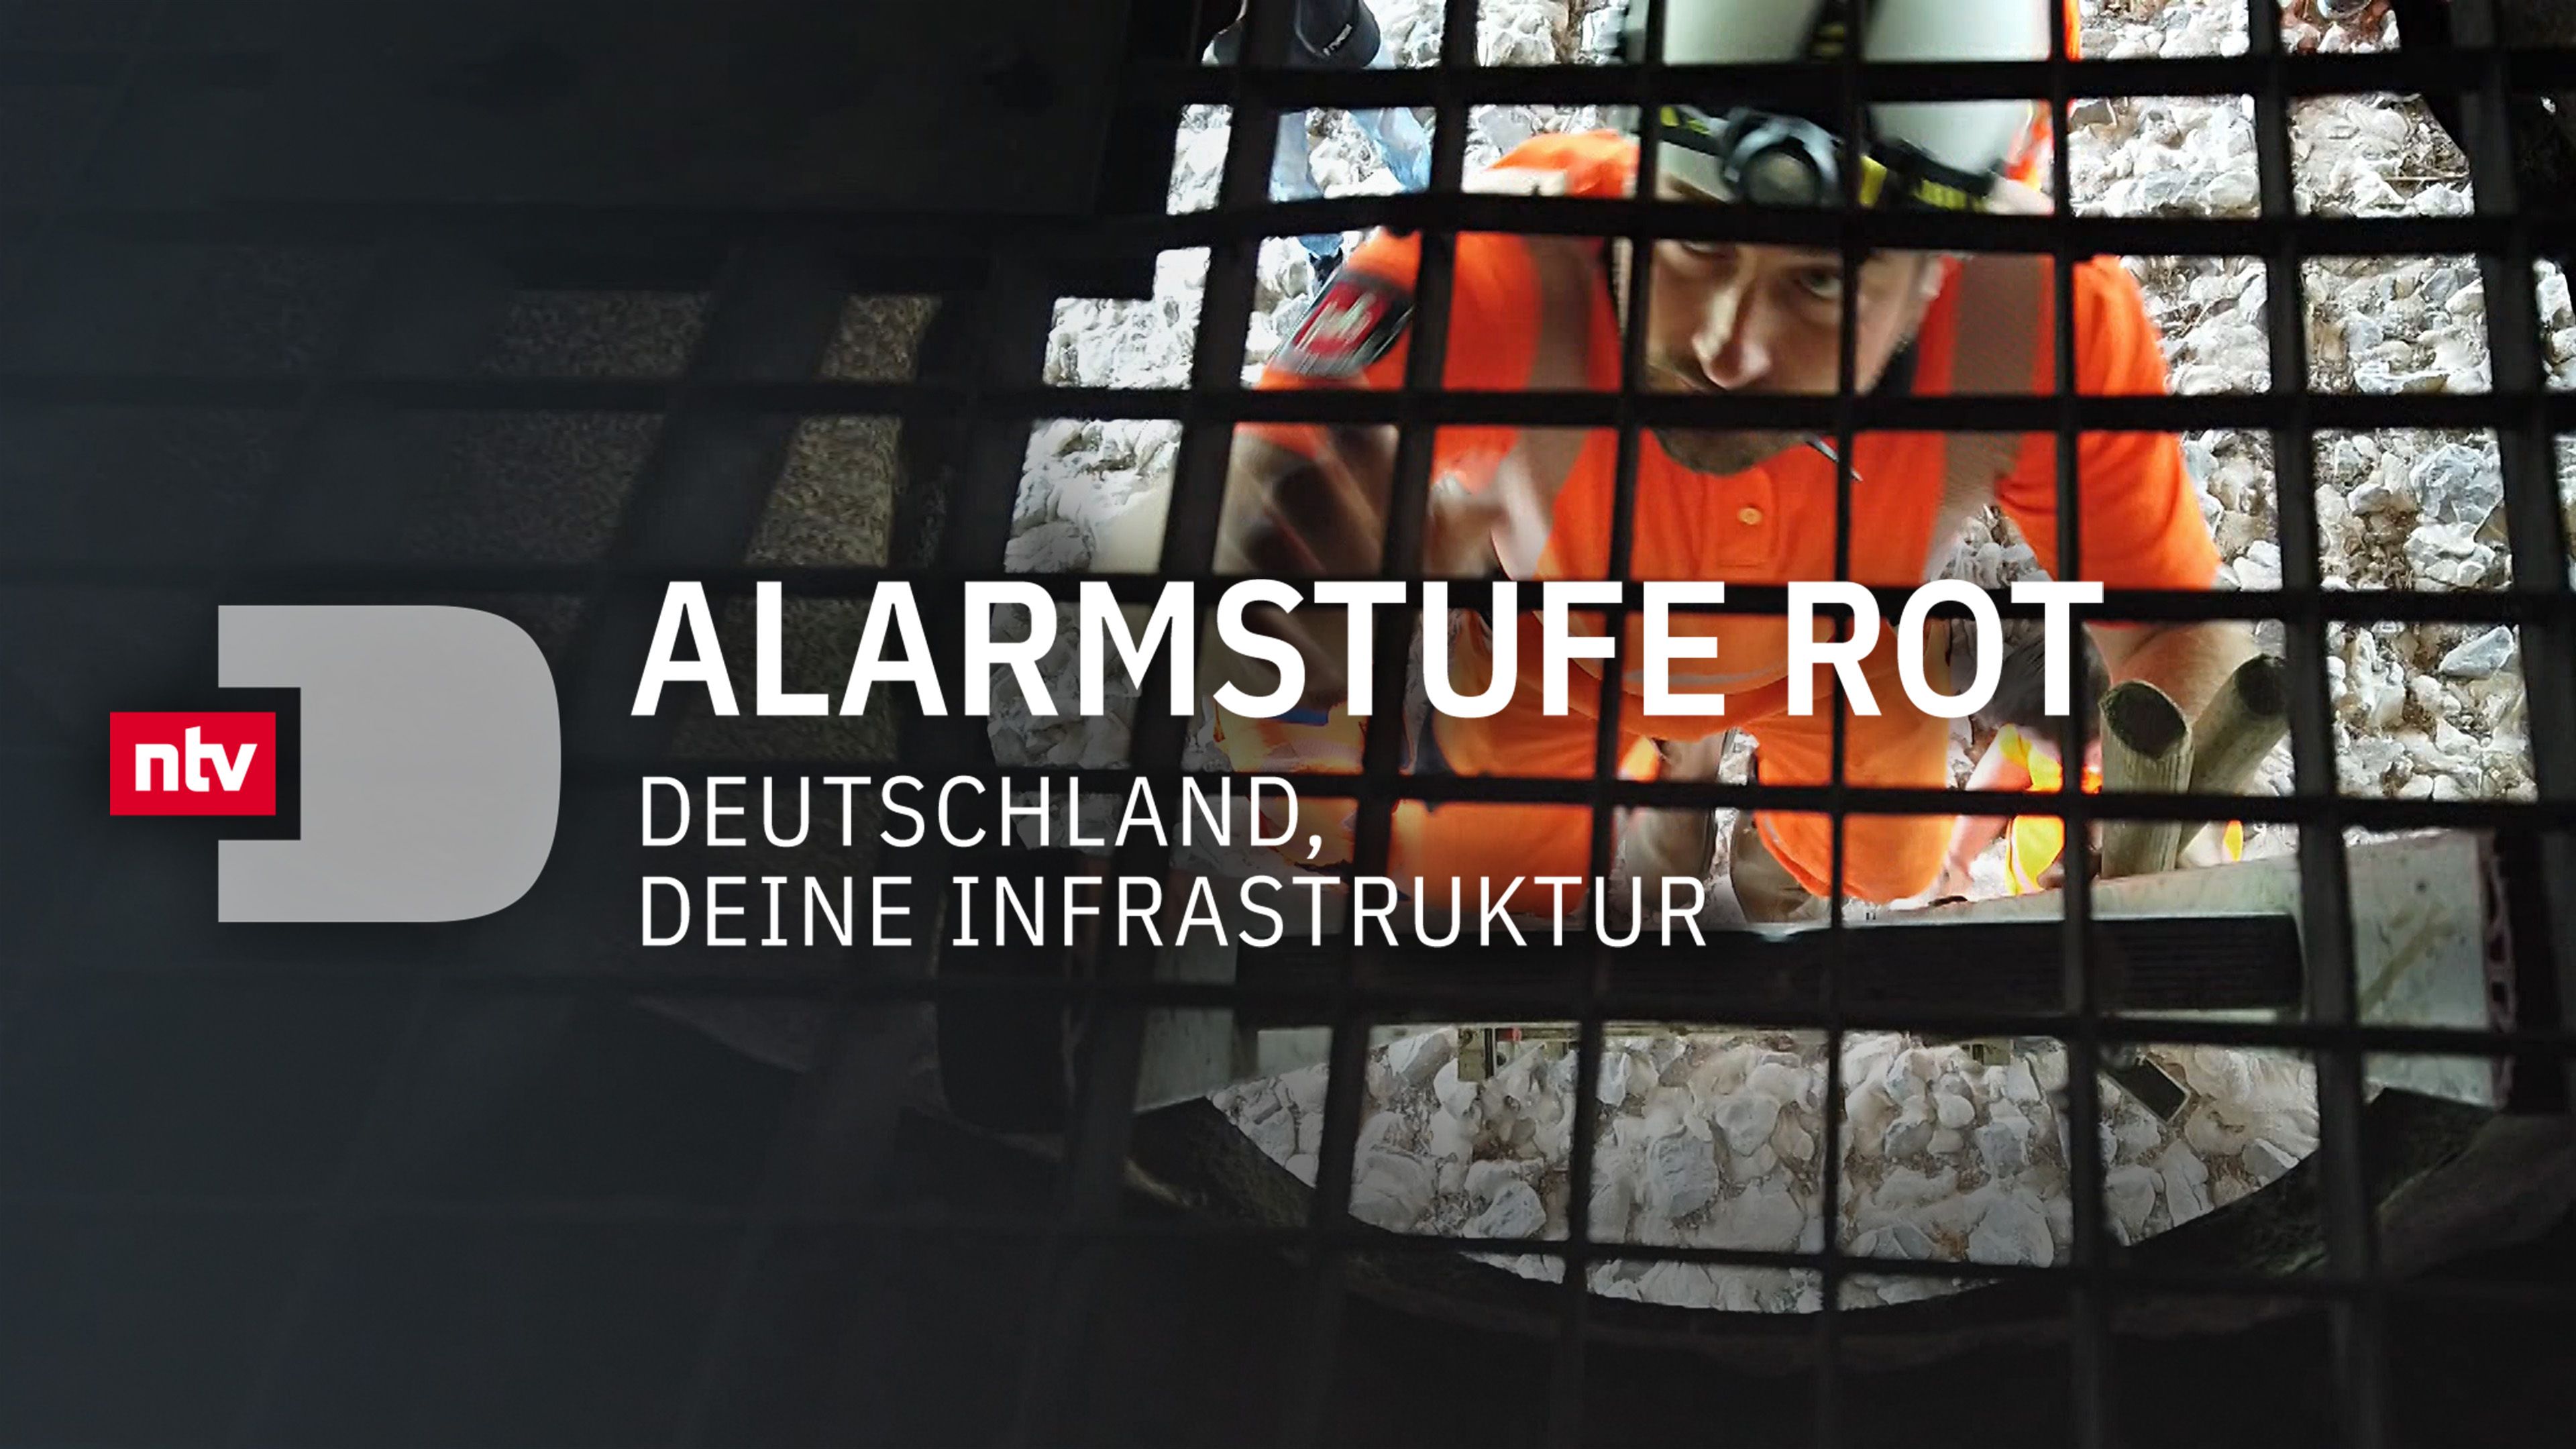 Alarmstufe Rot - Deutschland, deine Infrastruktur